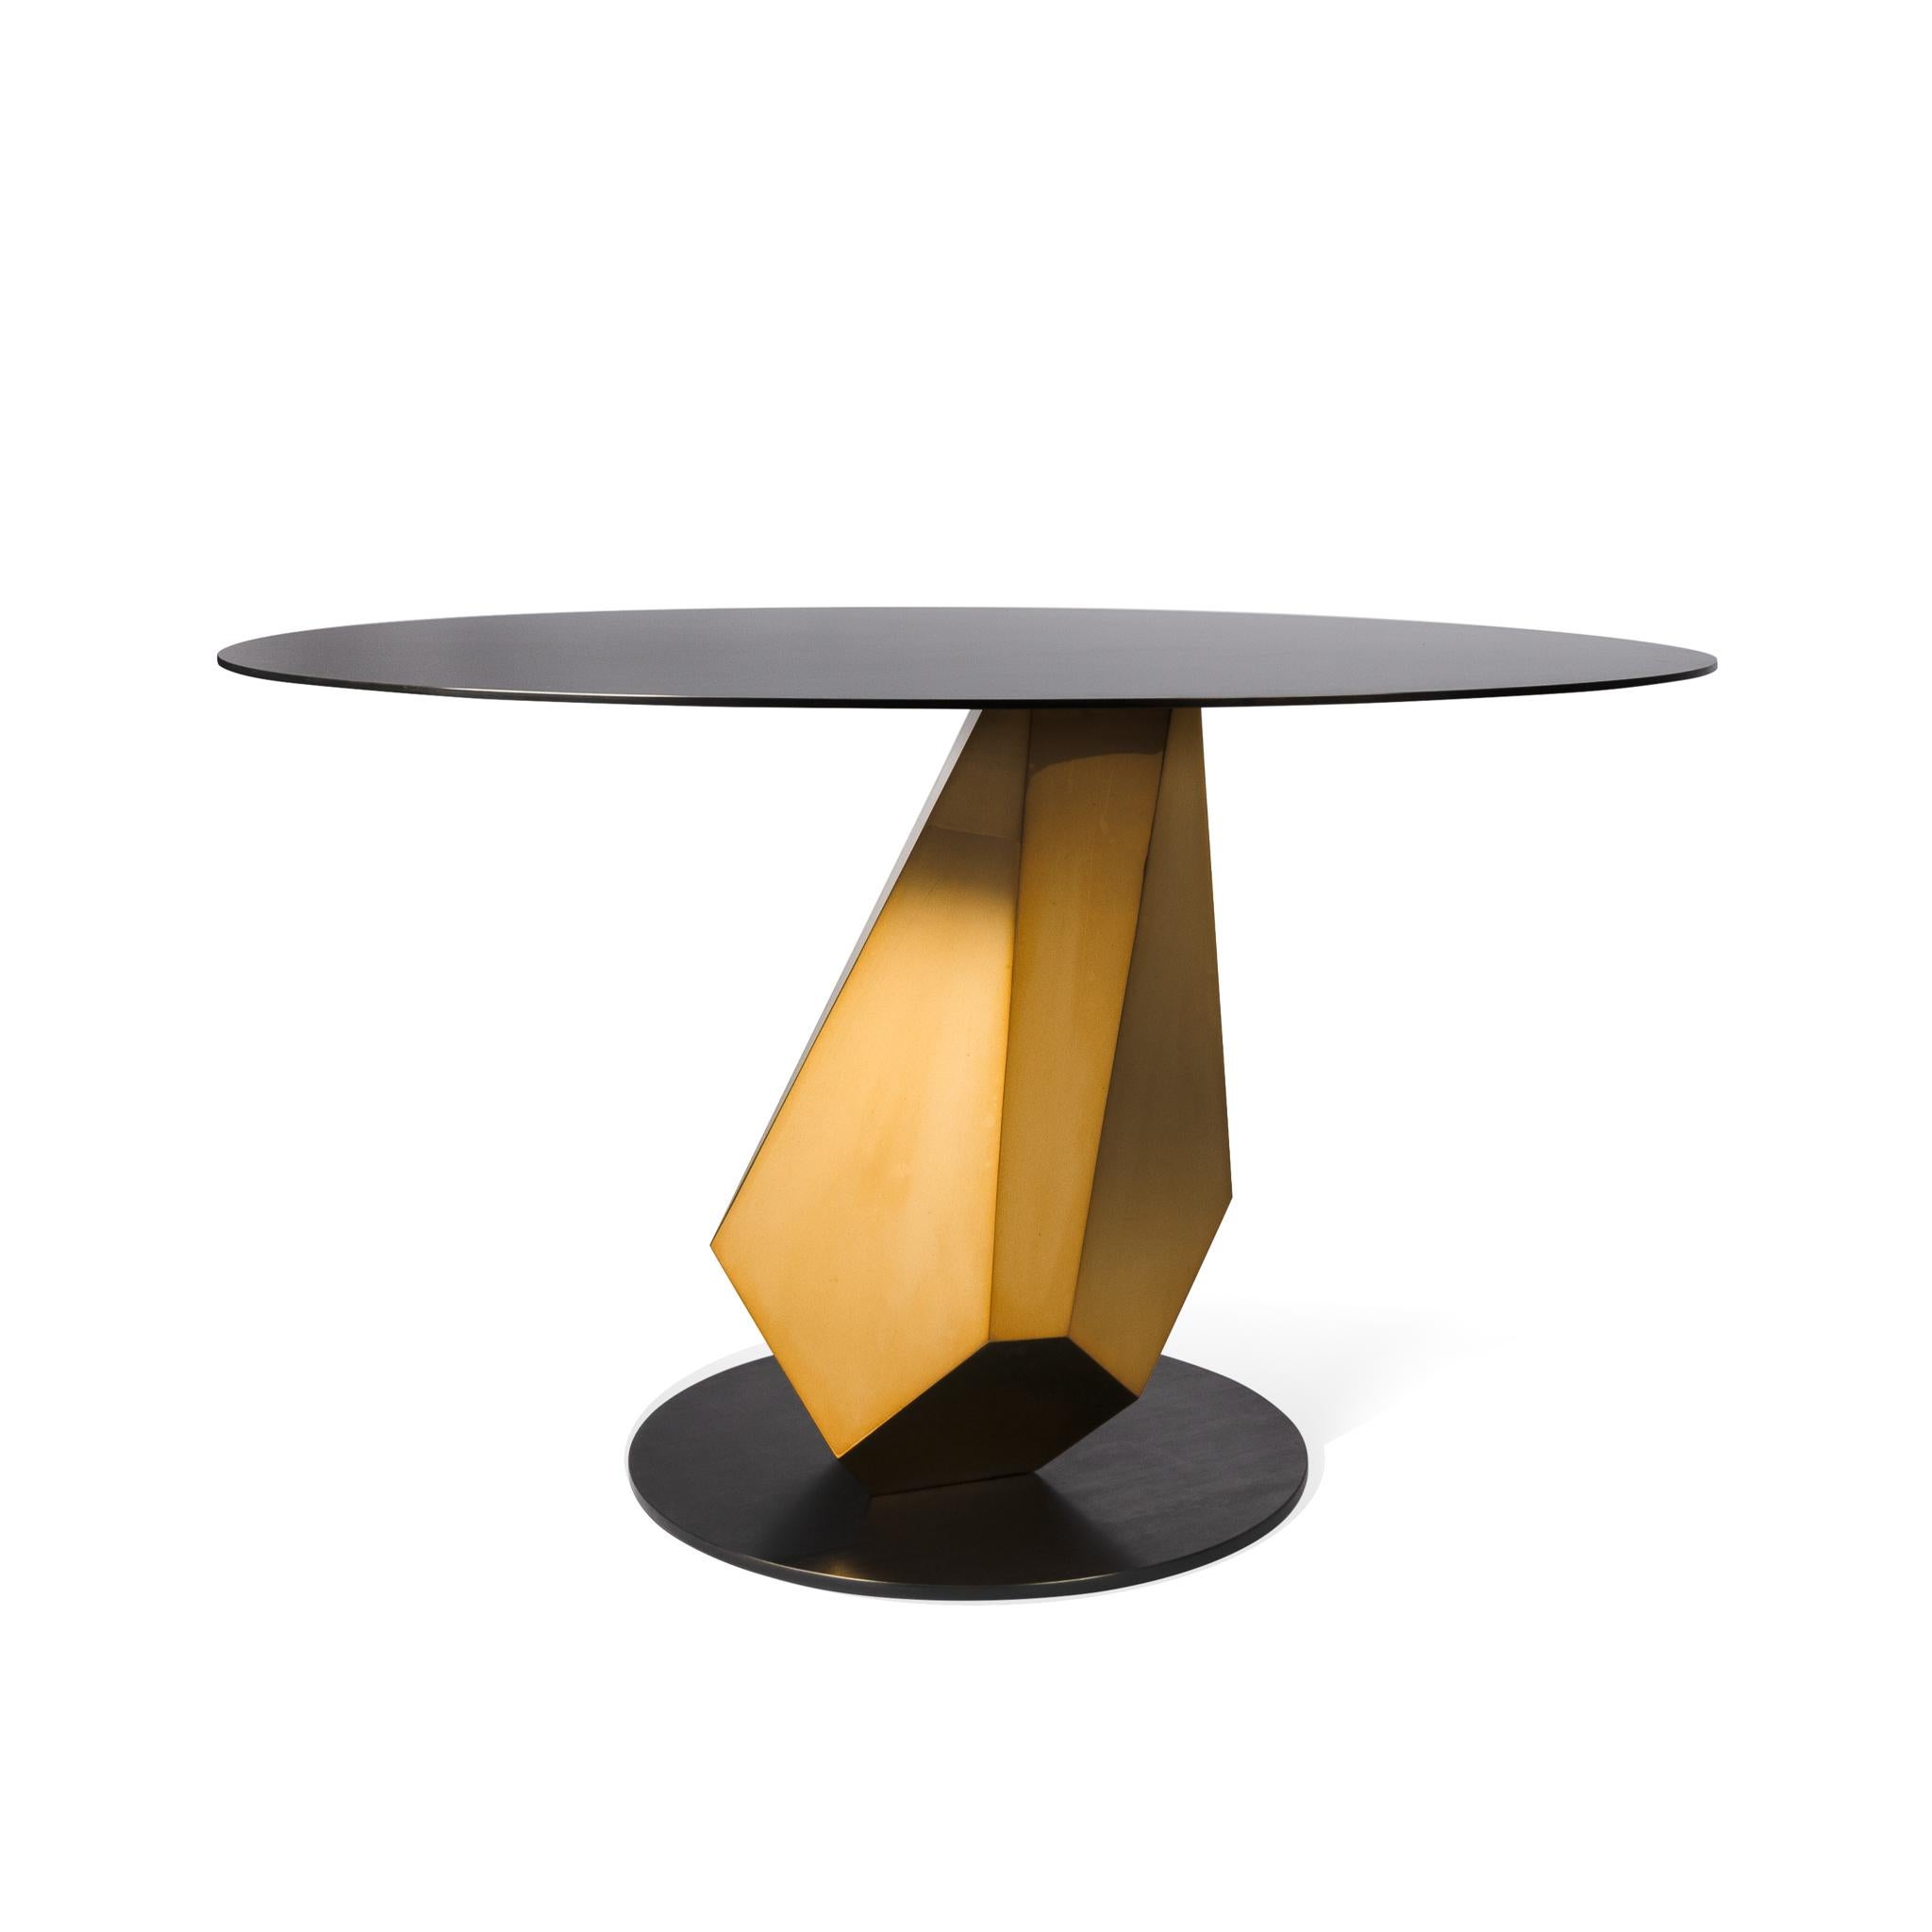 Actuellement 1 en stock, prêt à être expédié sous 2-3 jours 

La table Madison est un meuble opulent qui illustre l'alliance de la fonctionnalité et de la sculpture. La base explore l'équilibre et les formes géométriques naturelles, tout en